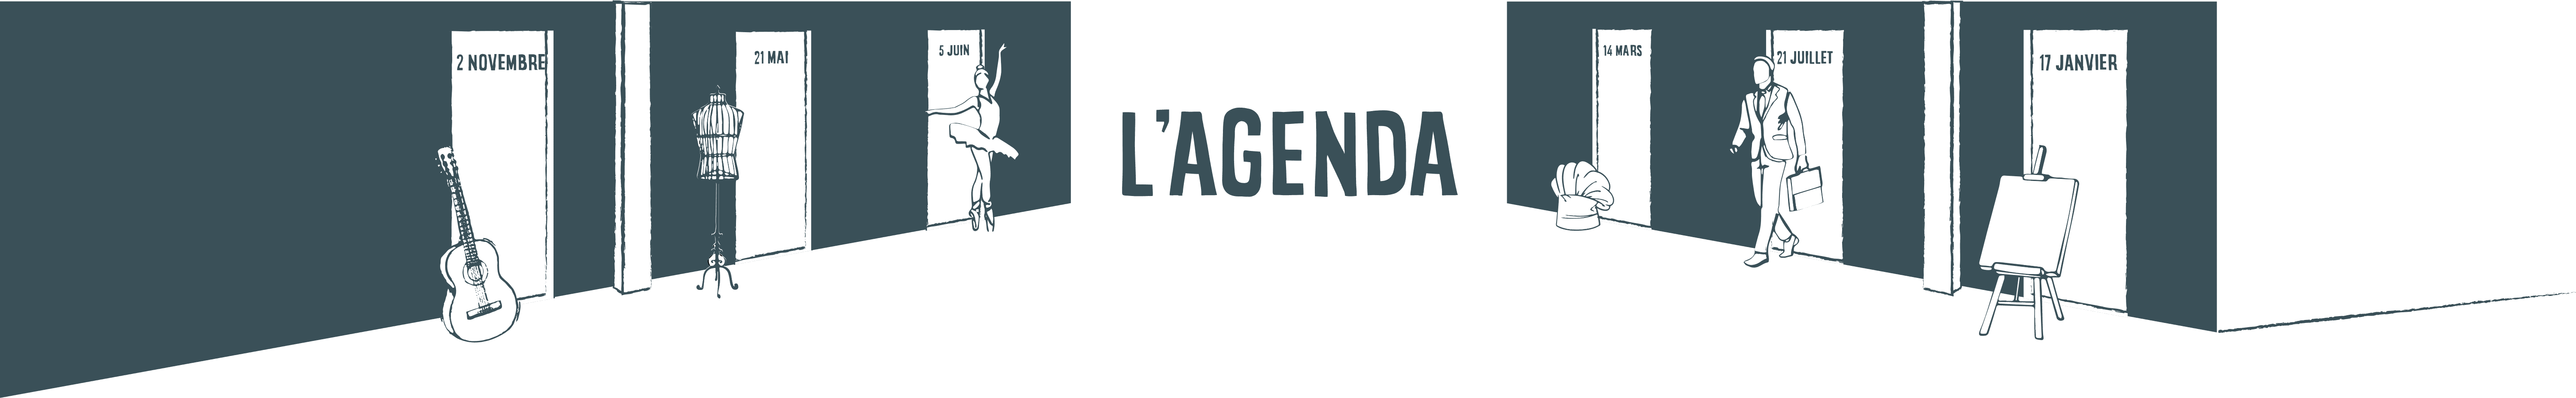 agenda-header__bg